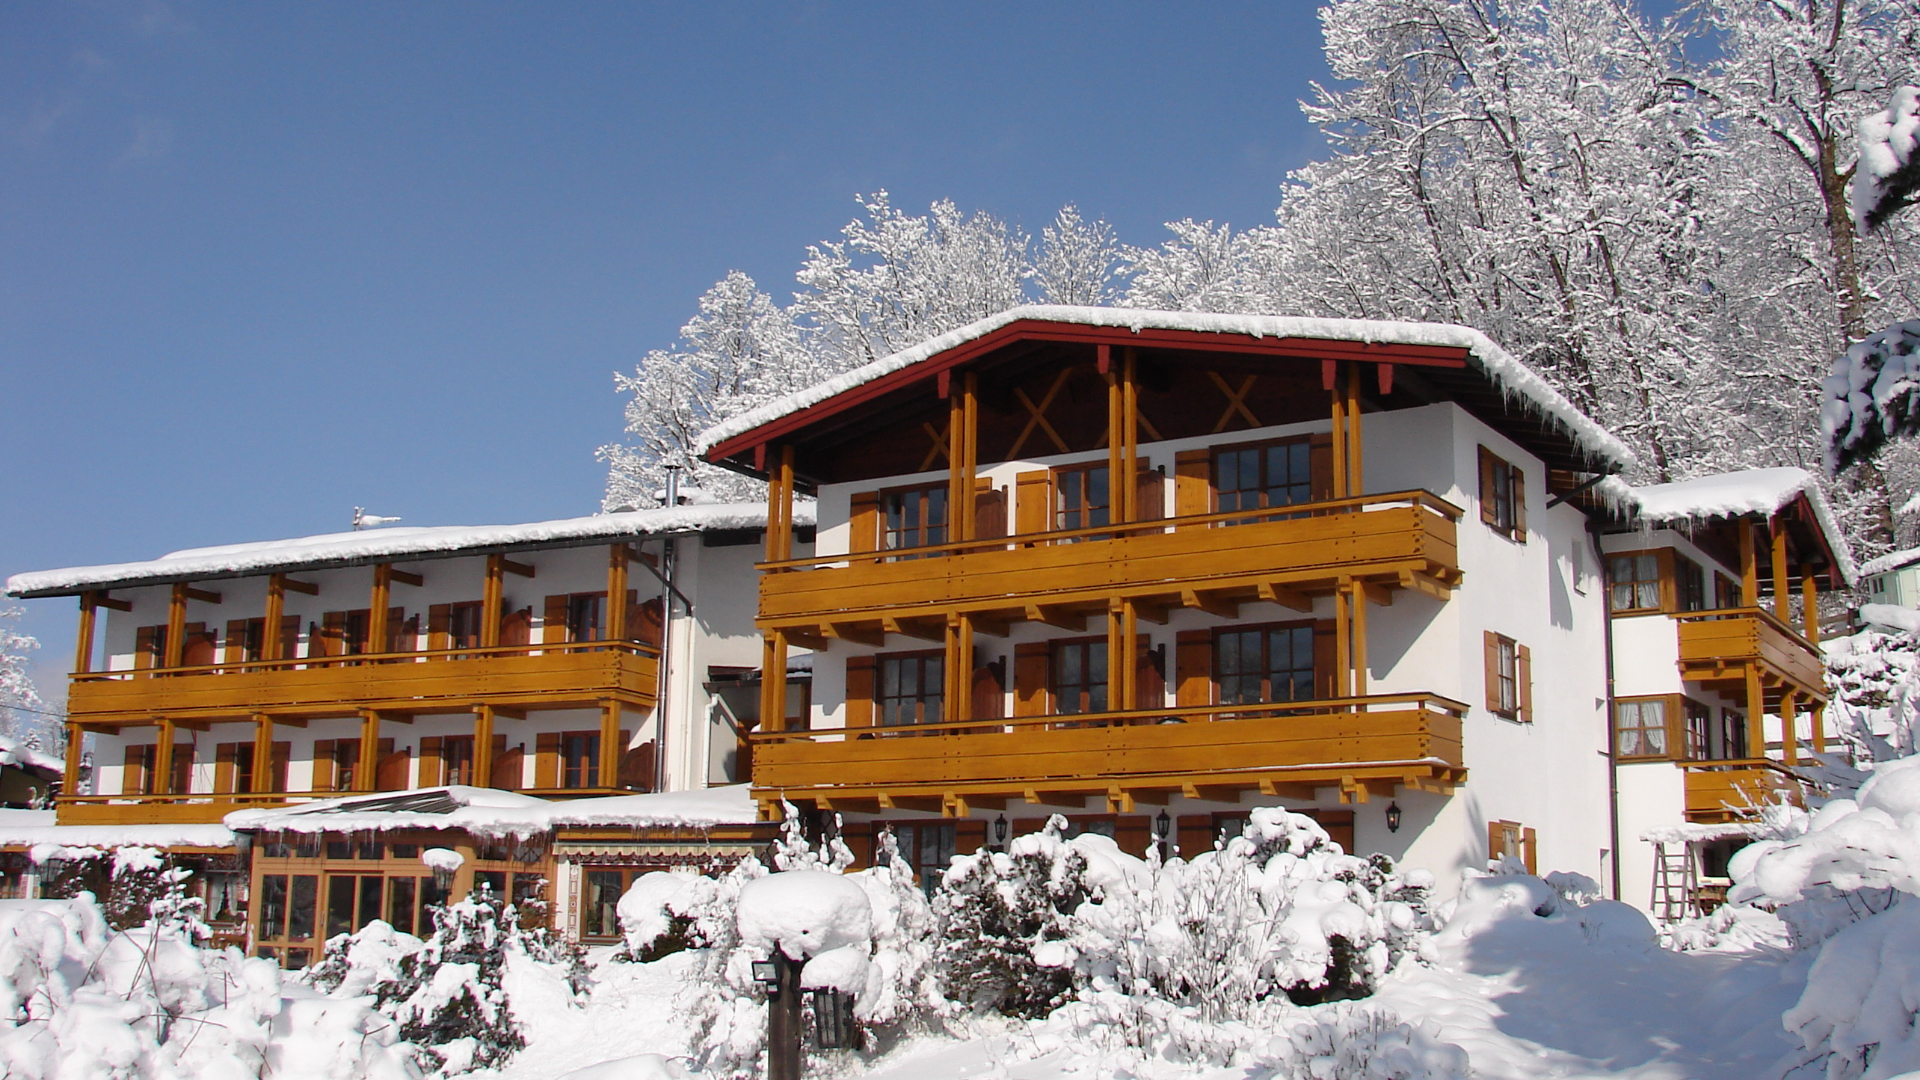 Hotel Georgenhof er beliggende 2 km fra centrum af den charmerende by Berchtesgaden. Fra hotellet til den nærmeste lift Jennerbahn er der 4 kilometer. PRISERNE ER INKL. 6 dages liftkort og 6 dages skileje. Fradrag hvis dette ikke ønskes.Hotellet er familiedrevet og her finder man en ægte bayersk stil. Hotellet har en rigtig god restaurant, som også er meget vellidt af de lokale udenfor højsæsonen. Efter en god og lang dag på ski, kan man slappe af i hotellets lækre sauna. Hotelværelserne er flot indrettede og de fleste værelser har en tilhørende balkon, hvor man kan nyde eftermiddagen.